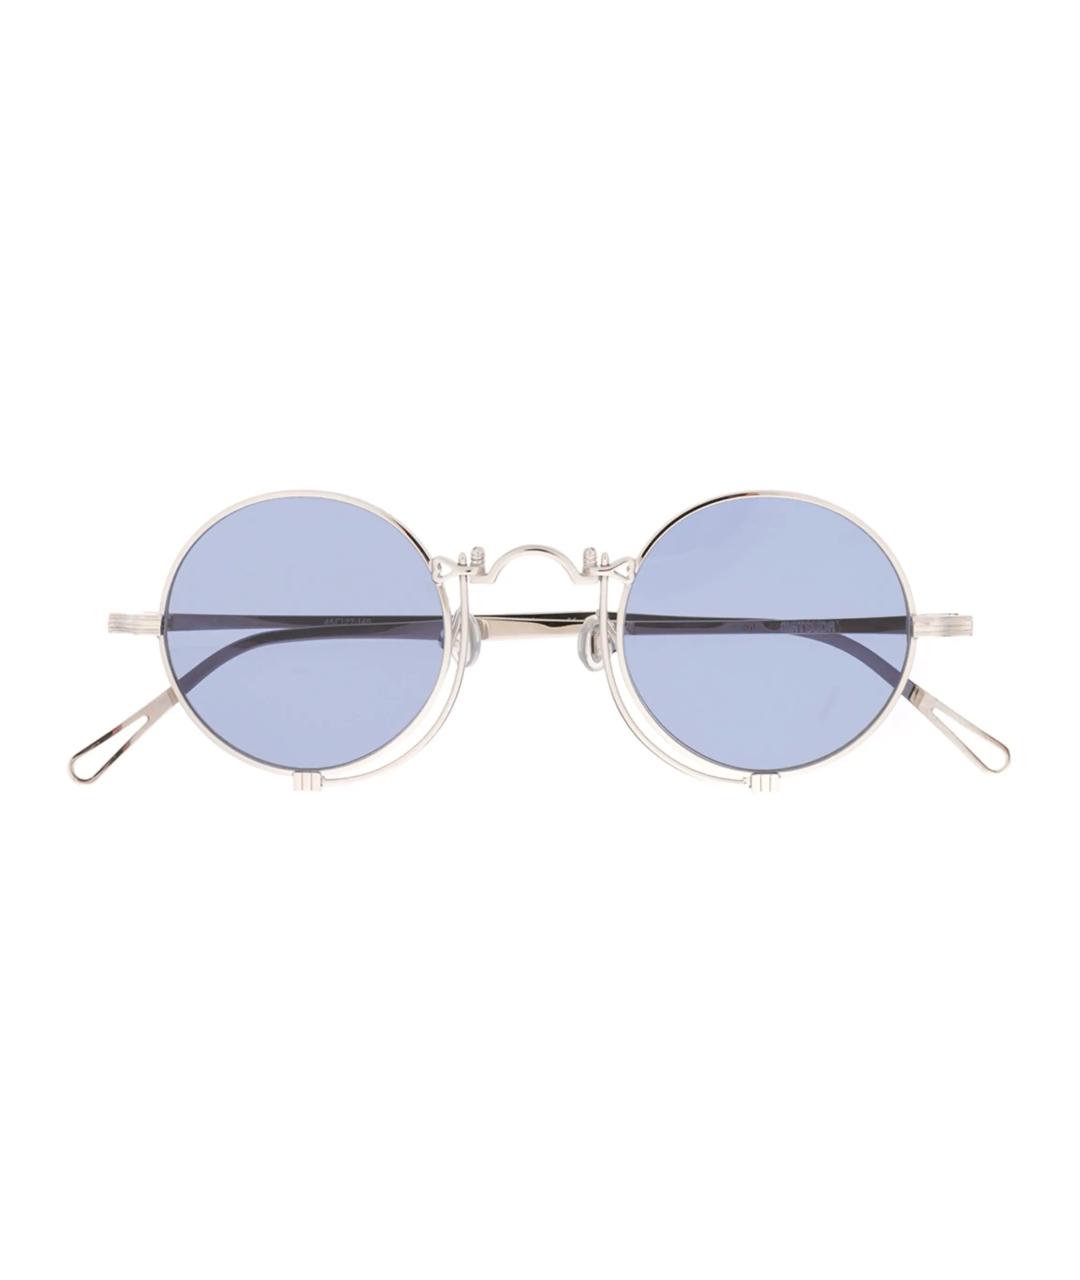 MATSUDA Голубые солнцезащитные очки, фото 1